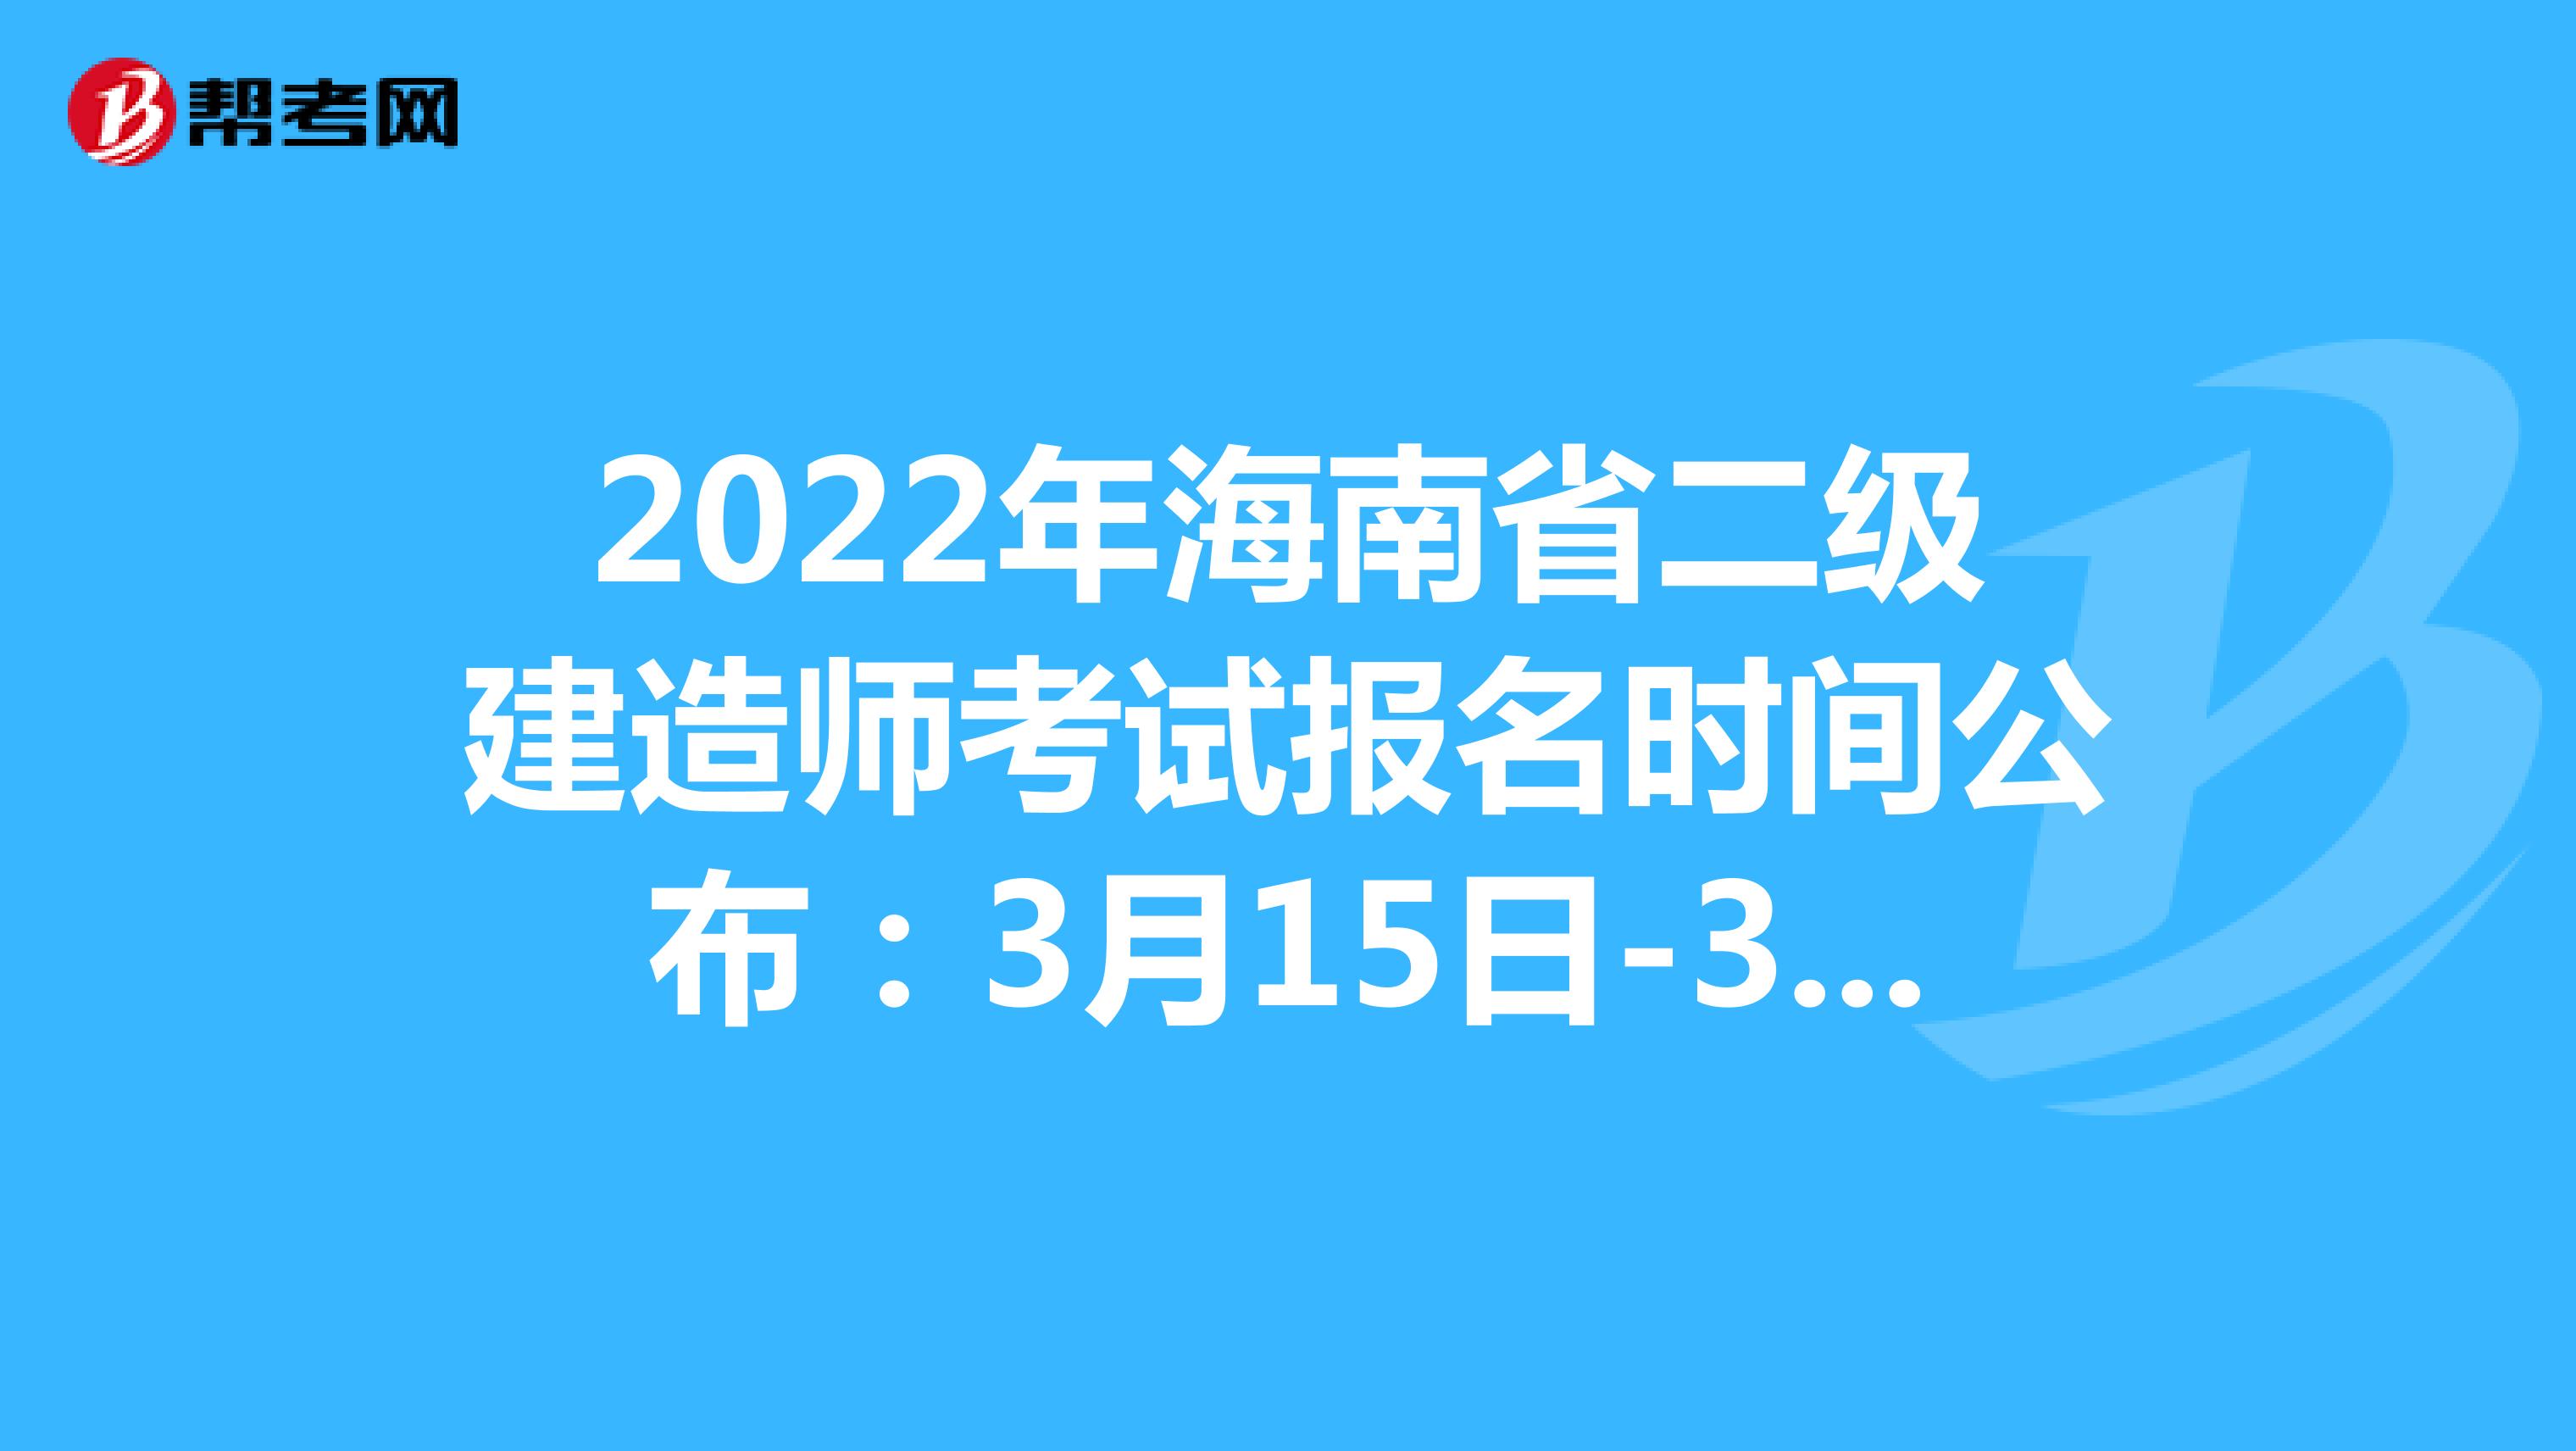 2022年海南省二级建造师考试报名时间公布：3月15日-3月31日